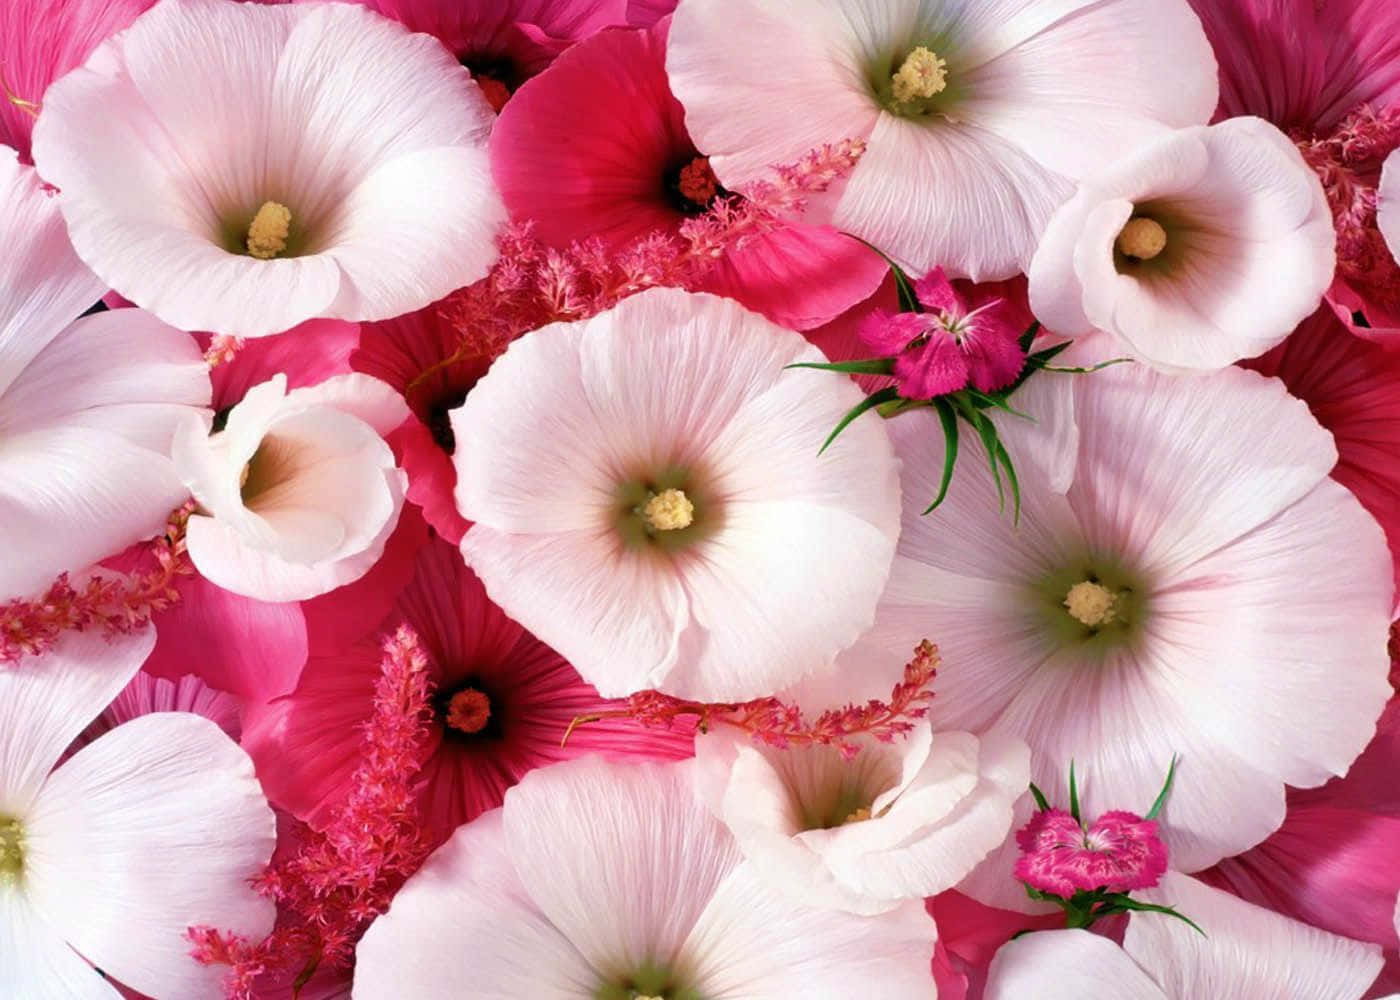 Umclose-up De Flores Rosa E Brancas